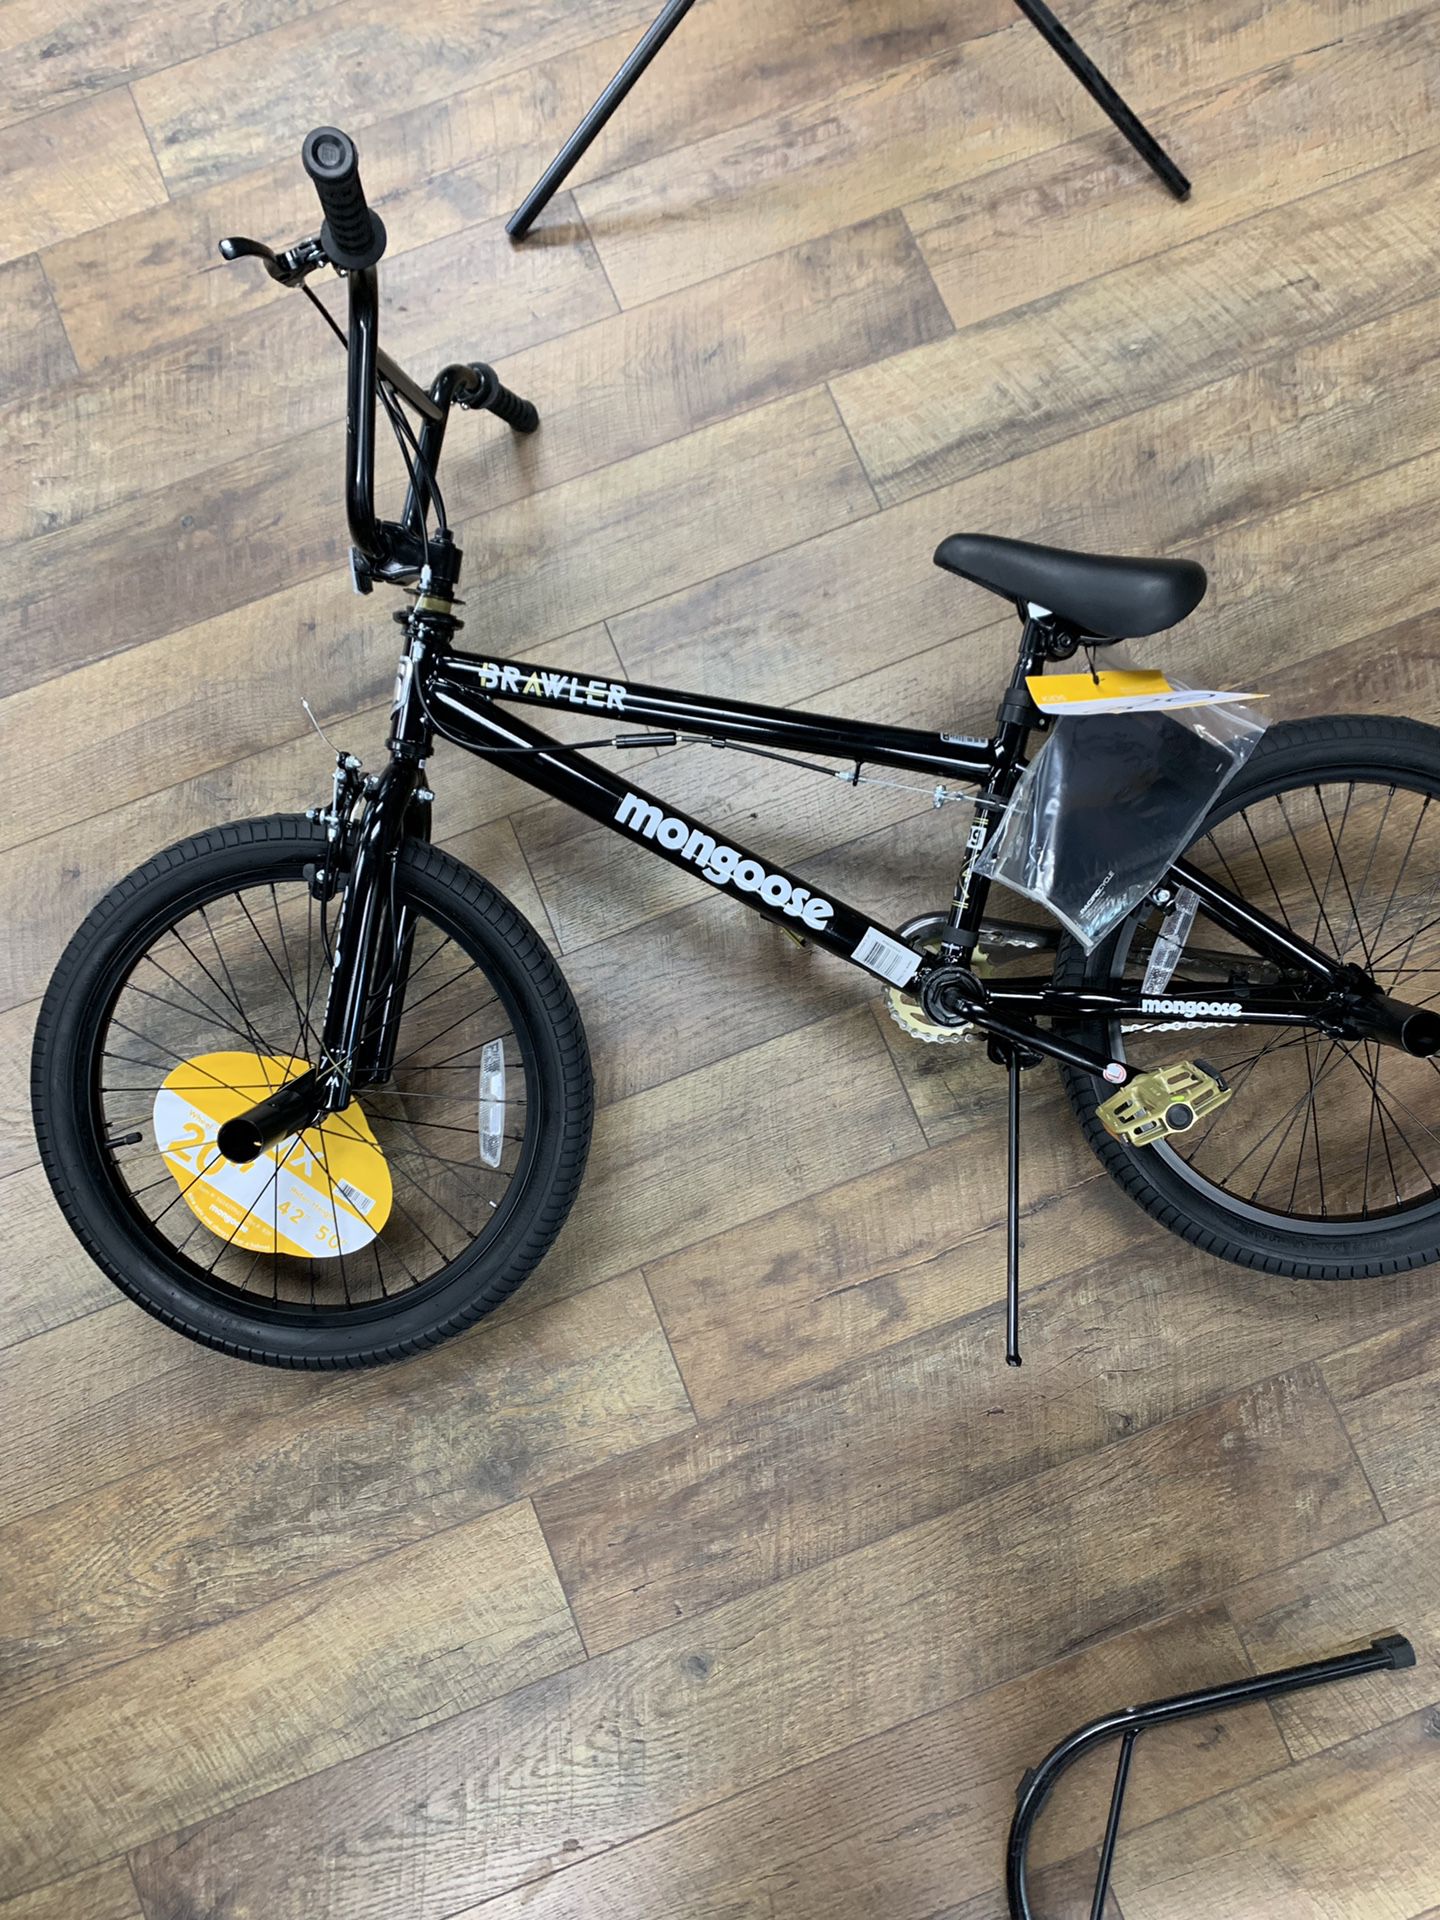 New with tags BMX Brawler bike